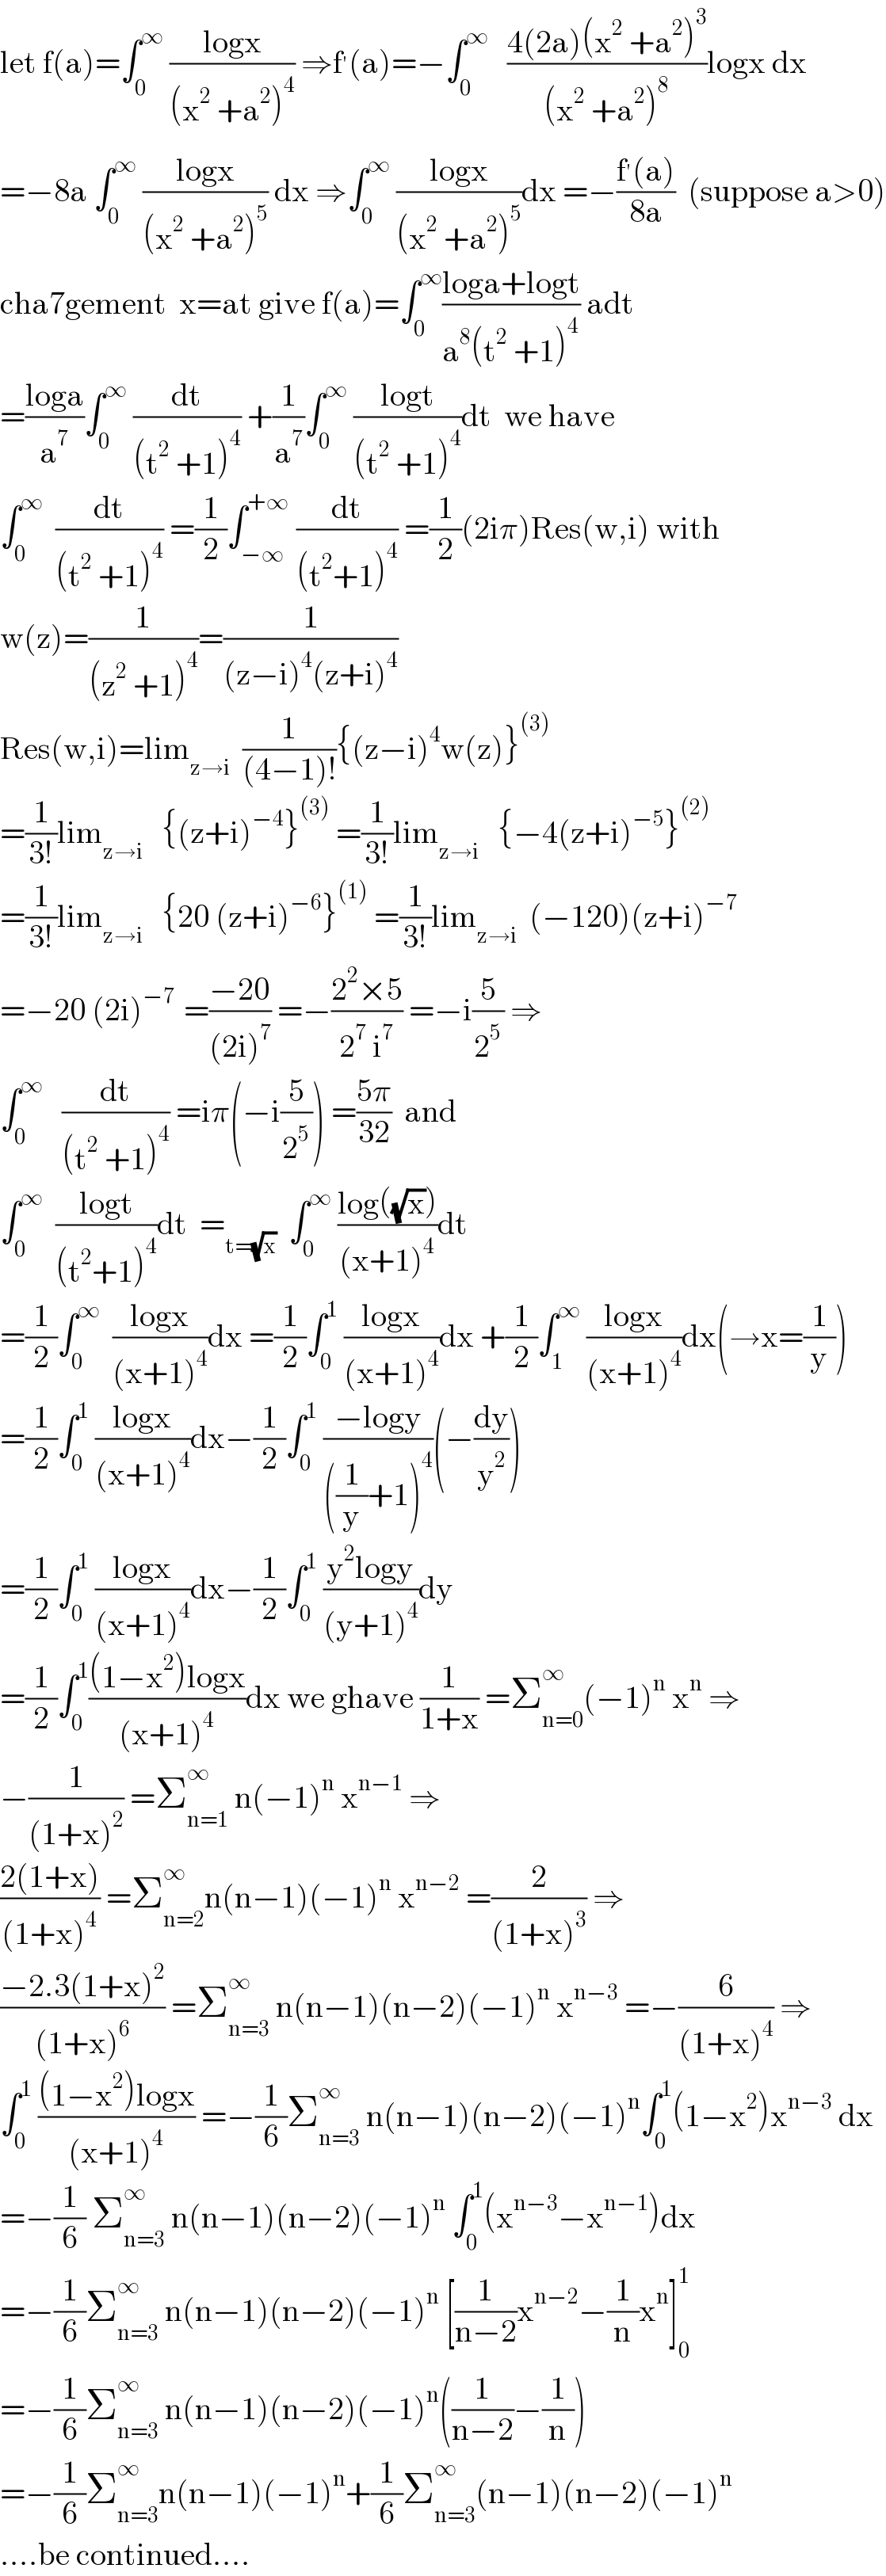 let f(a)=∫_0 ^∞  ((logx)/((x^2  +a^2 )^4 )) ⇒f^′ (a)=−∫_0 ^∞    ((4(2a)(x^2  +a^2 )^3 )/((x^2  +a^2 )^8 ))logx dx  =−8a ∫_0 ^∞  ((logx)/((x^2  +a^2 )^5 )) dx ⇒∫_0 ^∞  ((logx)/((x^2  +a^2 )^5 ))dx =−((f^′ (a))/(8a))  (suppose a>0)  cha7gement  x=at give f(a)=∫_0 ^∞ ((loga+logt)/(a^8 (t^2  +1)^4 )) adt  =((loga)/a^7 )∫_0 ^∞  (dt/((t^2  +1)^4 )) +(1/a^7 )∫_0 ^∞  ((logt)/((t^2  +1)^4 ))dt  we have  ∫_0 ^∞   (dt/((t^2  +1)^4 )) =(1/2)∫_(−∞) ^(+∞)  (dt/((t^2 +1)^4 )) =(1/2)(2iπ)Res(w,i) with  w(z)=(1/((z^2  +1)^4 ))=(1/((z−i)^4 (z+i)^4 ))  Res(w,i)=lim_(z→i)   (1/((4−1)!)){(z−i)^4 w(z)}^((3))   =(1/(3!))lim_(z→i)    {(z+i)^(−4) }^((3))  =(1/(3!))lim_(z→i)    {−4(z+i)^(−5) }^((2))   =(1/(3!))lim_(z→i)    {20 (z+i)^(−6) }^((1))  =(1/(3!))lim_(z→i)   (−120)(z+i)^(−7)   =−20 (2i)^(−7 )  =((−20)/((2i)^7 )) =−((2^2 ×5)/(2^7  i^7 )) =−i(5/2^5 ) ⇒  ∫_0 ^∞    (dt/((t^2  +1)^4 )) =iπ(−i(5/2^5 )) =((5π)/(32))  and  ∫_0 ^∞   ((logt)/((t^2 +1)^4 ))dt  =_(t=(√x))   ∫_0 ^∞  ((log((√x)))/((x+1)^4 ))dt  =(1/2)∫_0 ^∞   ((logx)/((x+1)^4 ))dx =(1/2)∫_0 ^1  ((logx)/((x+1)^4 ))dx +(1/2)∫_1 ^∞  ((logx)/((x+1)^4 ))dx(→x=(1/y))  =(1/2)∫_0 ^1  ((logx)/((x+1)^4 ))dx−(1/2)∫_0 ^1  ((−logy)/(((1/y)+1)^4 ))(−(dy/y^2 ))  =(1/2)∫_0 ^1  ((logx)/((x+1)^4 ))dx−(1/2)∫_0 ^1  ((y^2 logy)/((y+1)^4 ))dy  =(1/2)∫_0 ^1 (((1−x^2 )logx)/((x+1)^4 ))dx we ghave (1/(1+x)) =Σ_(n=0) ^∞ (−1)^n  x^n  ⇒  −(1/((1+x)^2 )) =Σ_(n=1) ^∞  n(−1)^n  x^(n−1)  ⇒  ((2(1+x))/((1+x)^4 )) =Σ_(n=2) ^∞ n(n−1)(−1)^n  x^(n−2)  =(2/((1+x)^3 )) ⇒  ((−2.3(1+x)^2 )/((1+x)^6 )) =Σ_(n=3) ^∞  n(n−1)(n−2)(−1)^n  x^(n−3)  =−(6/((1+x)^4 )) ⇒  ∫_0 ^1  (((1−x^2 )logx)/((x+1)^4 )) =−(1/6)Σ_(n=3) ^∞  n(n−1)(n−2)(−1)^n ∫_0 ^1 (1−x^2 )x^(n−3)  dx  =−(1/6) Σ_(n=3) ^∞  n(n−1)(n−2)(−1)^n  ∫_0 ^1 (x^(n−3) −x^(n−1) )dx  =−(1/6)Σ_(n=3) ^∞  n(n−1)(n−2)(−1)^n  [(1/(n−2))x^(n−2) −(1/n)x^n ]_0 ^1   =−(1/6)Σ_(n=3) ^∞  n(n−1)(n−2)(−1)^n ((1/(n−2))−(1/n))  =−(1/6)Σ_(n=3) ^∞ n(n−1)(−1)^n +(1/6)Σ_(n=3) ^∞ (n−1)(n−2)(−1)^n   ....be continued....  